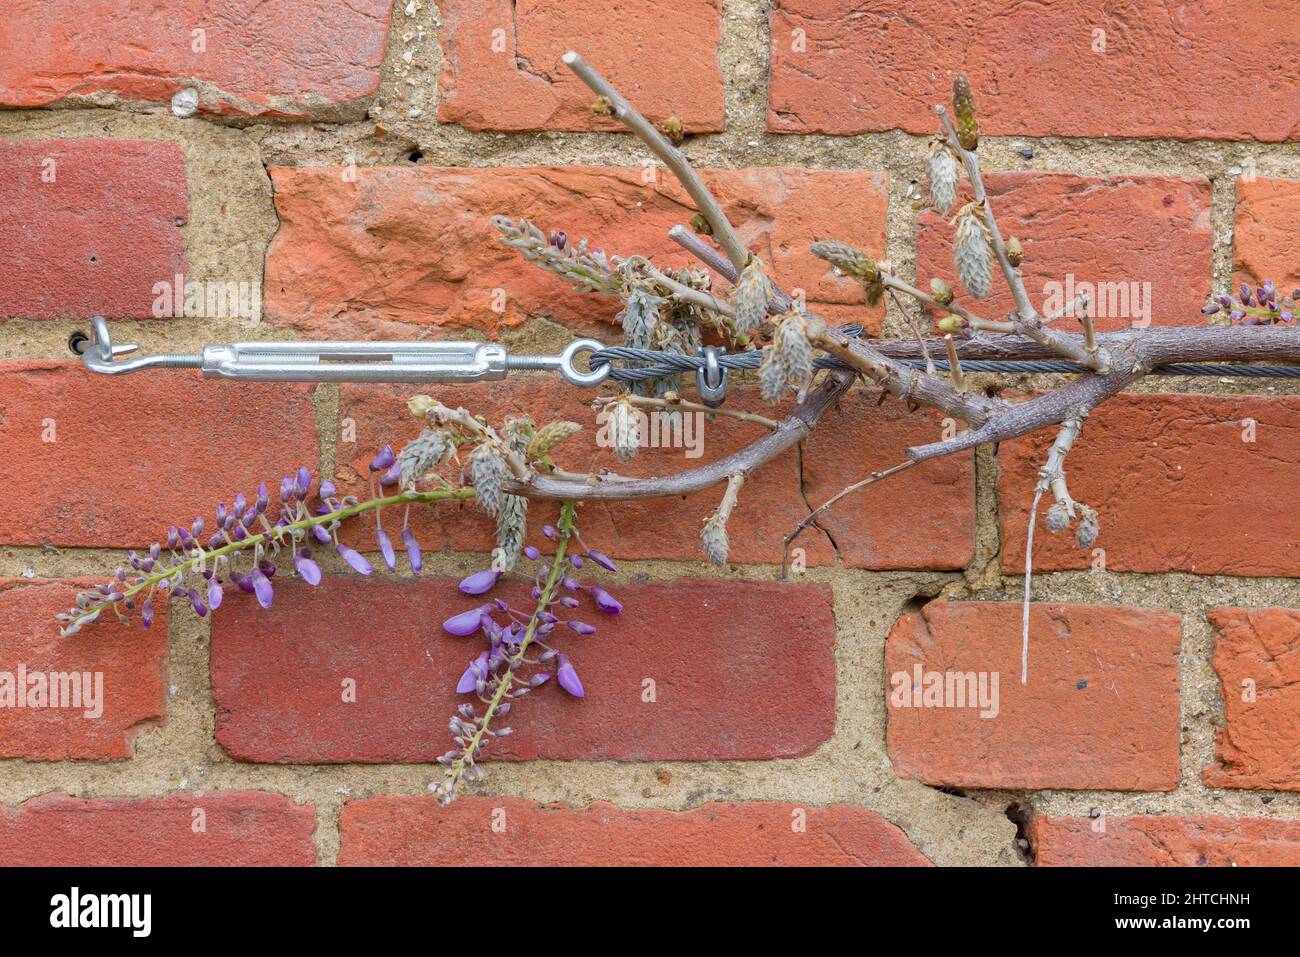 Plante de wisteria ou arbre grimpant sur un mur de brique, Royaume-Uni. Soutien ou entraînement avec câble métallique, tendeur et œilletons de vigne. Banque D'Images